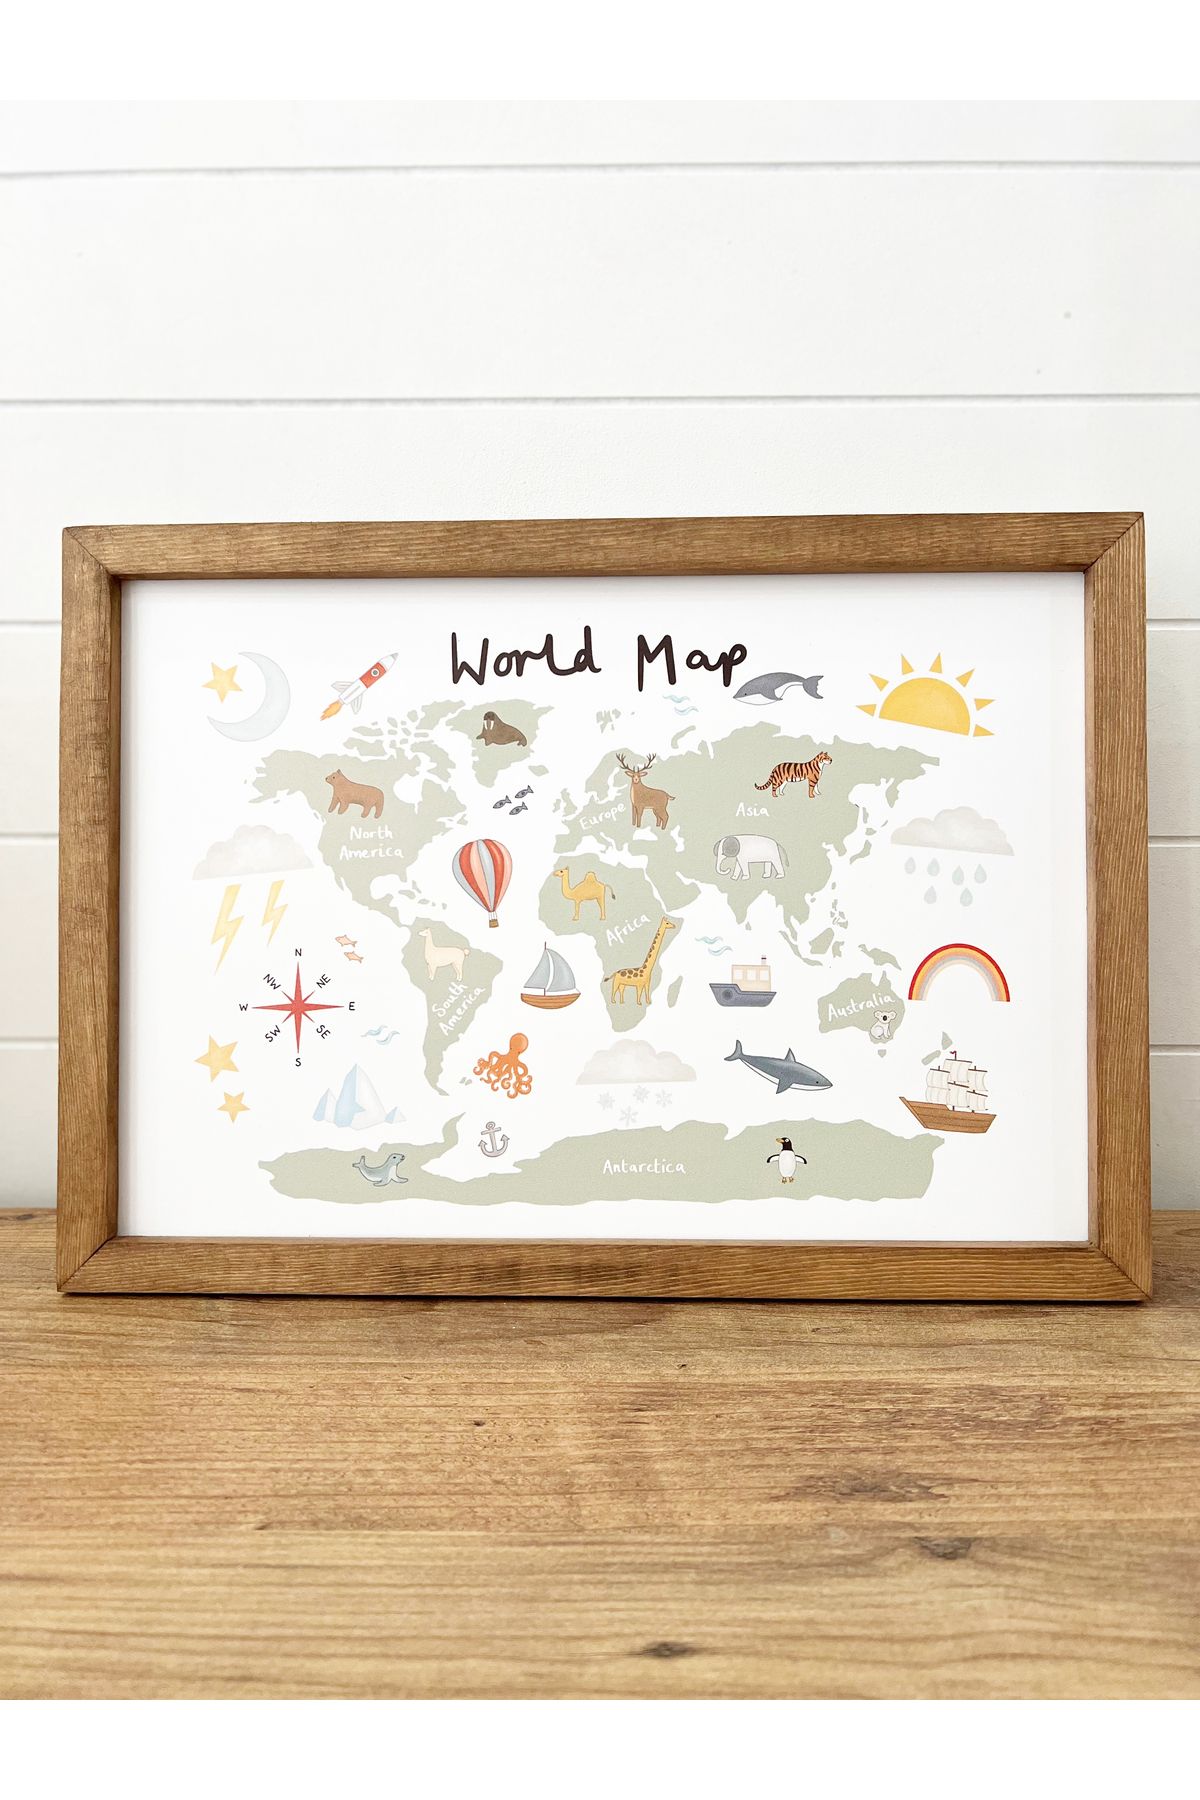 Puu Design Çocuk Odası Dünya Haritası Temalı Ahşap Çerçeveli Tablo World Map - Kahverengi